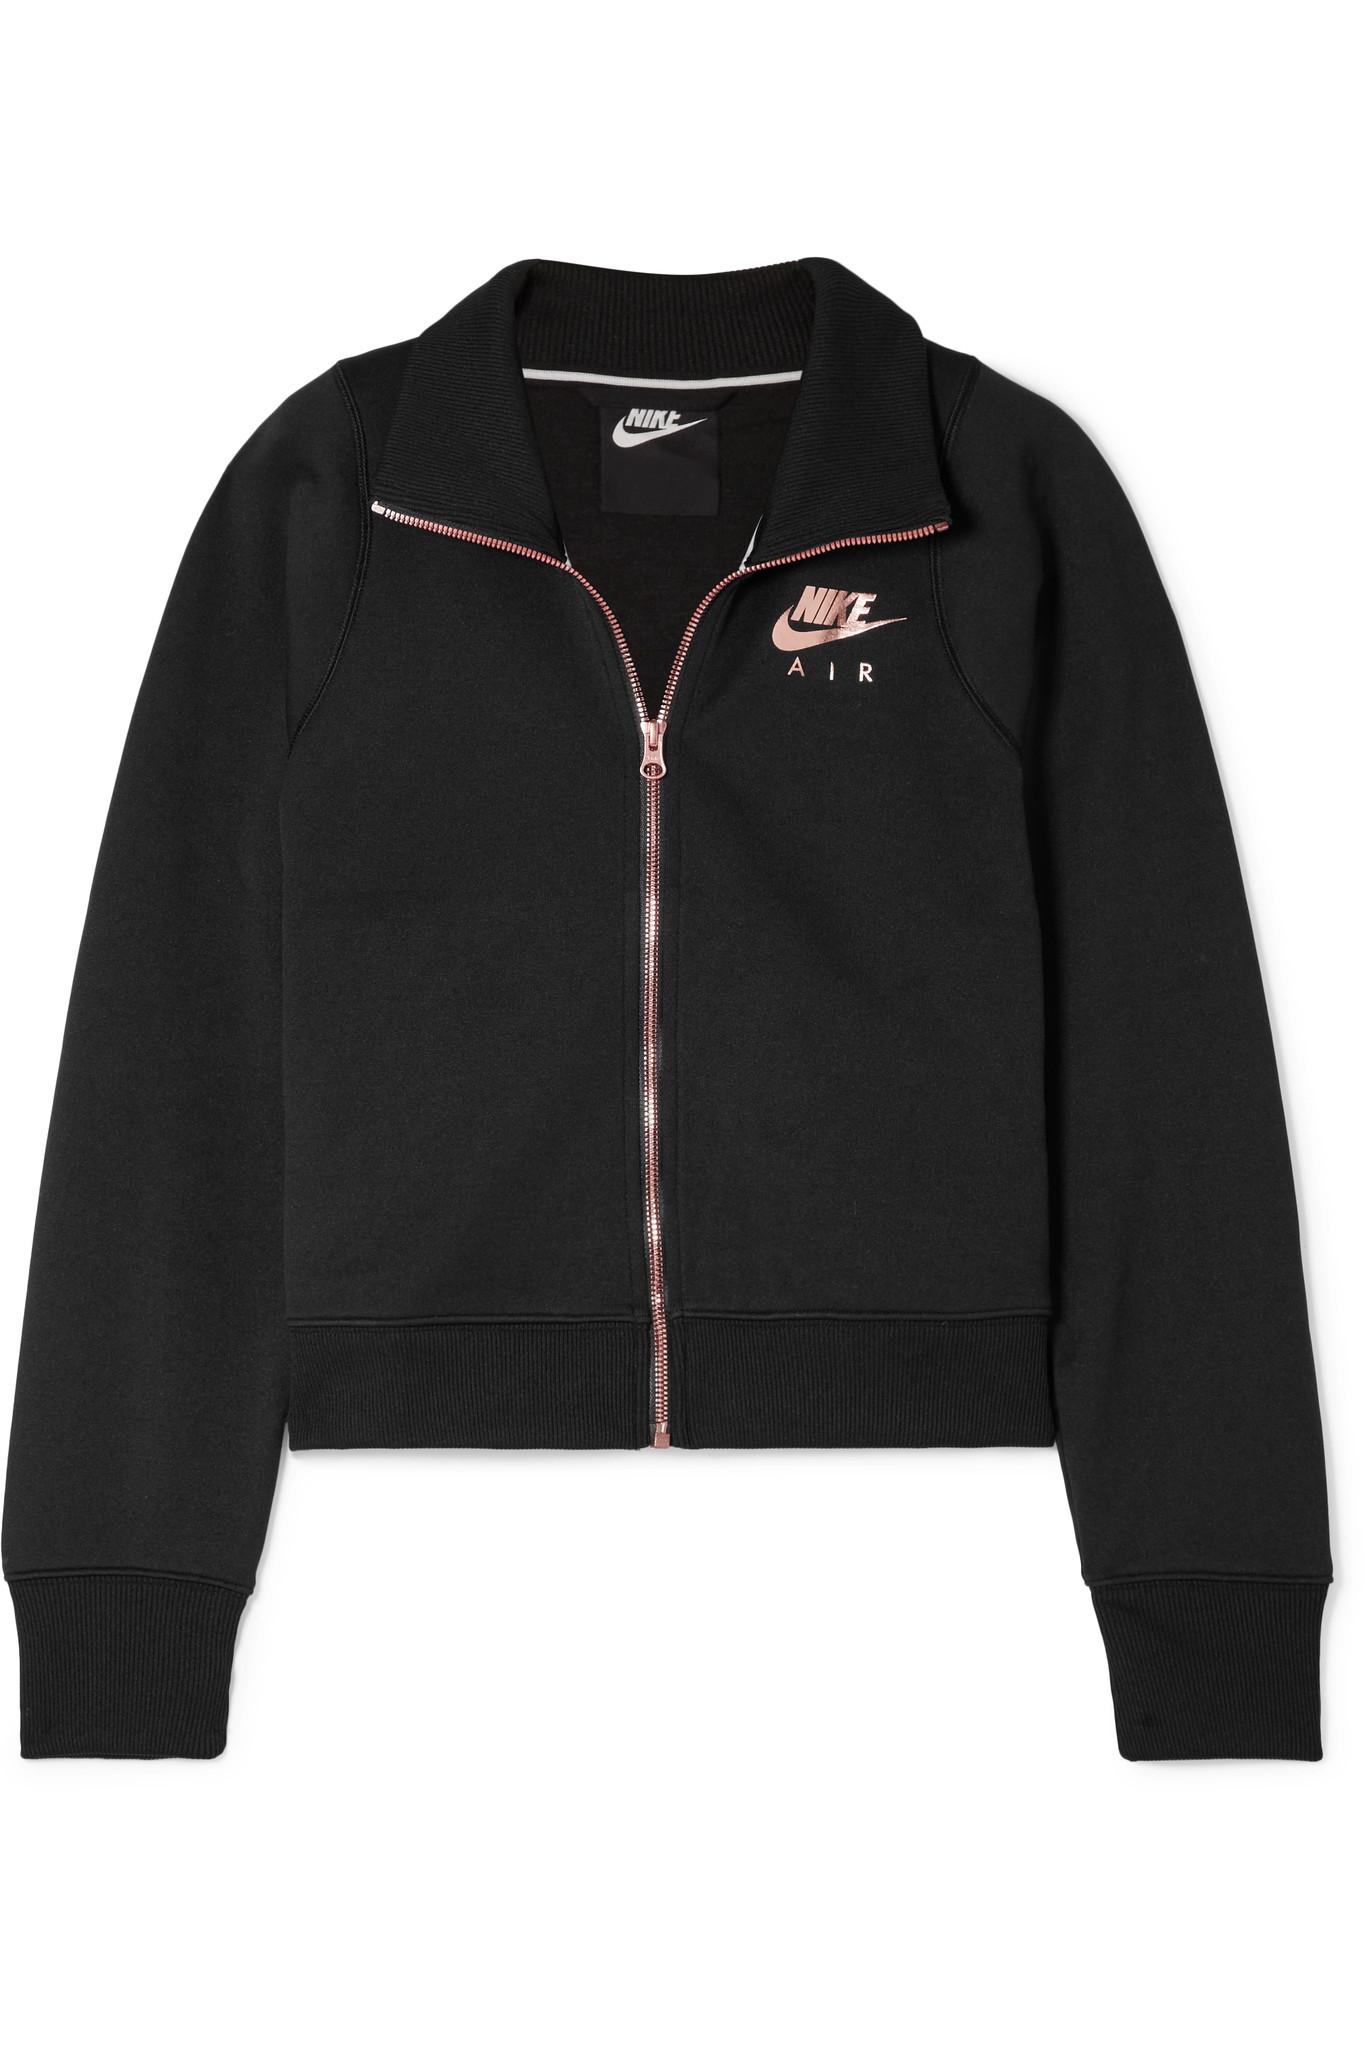 waar dan ook Vervolgen Onophoudelijk Nike Air N98 Jersey Track Jacket in Black | Lyst